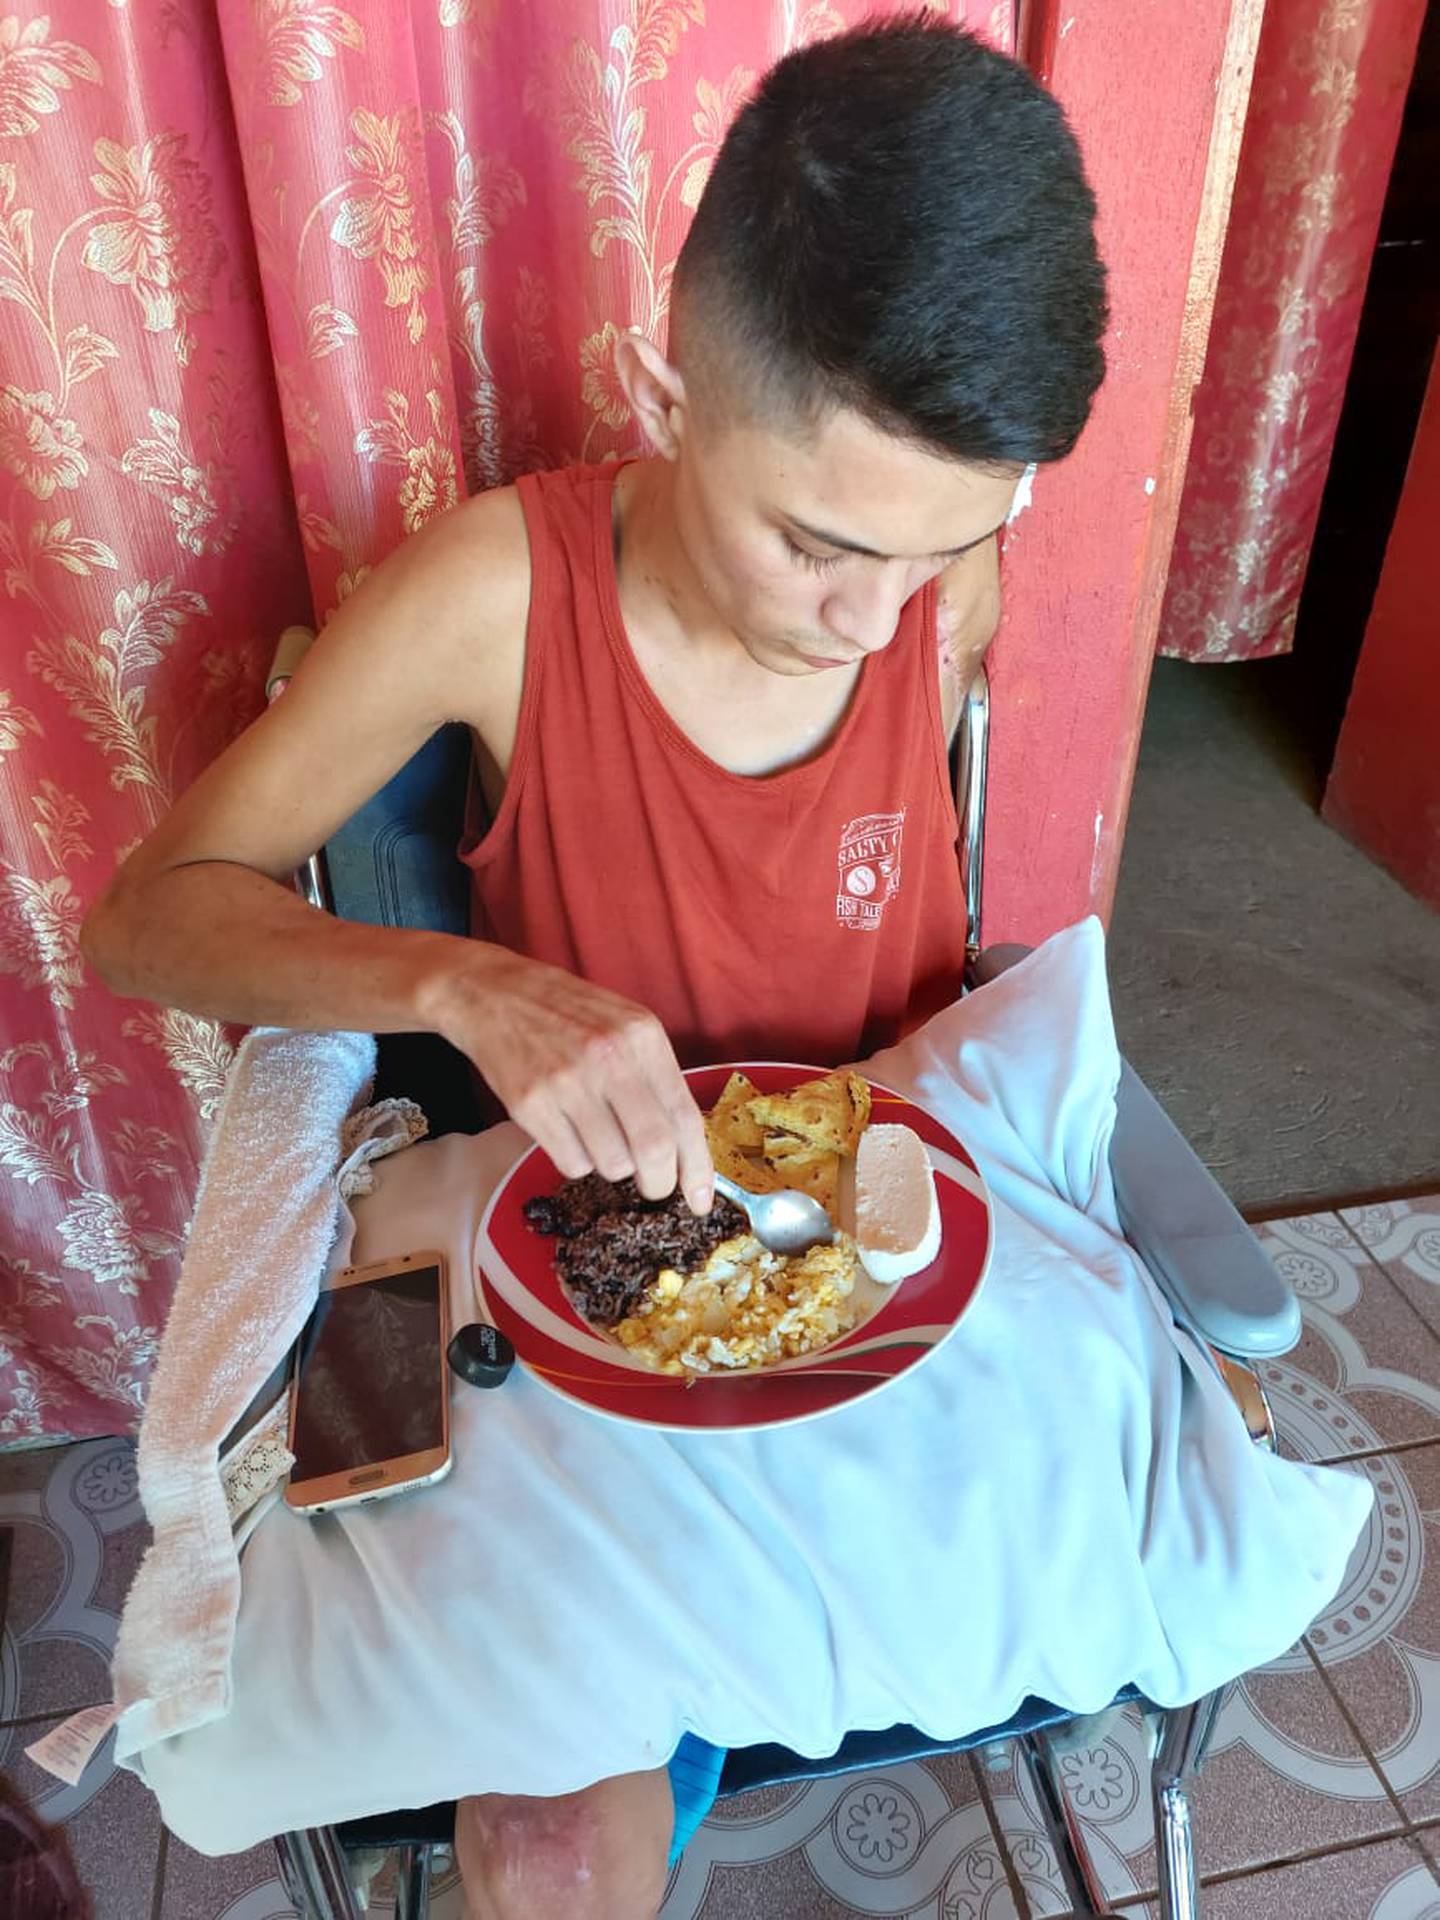 José Enrique Varela, joven que perdió su brazo izquierdo y pierna izquierda en accidente de tránsito. Foto cortesía José Enrique Varela.